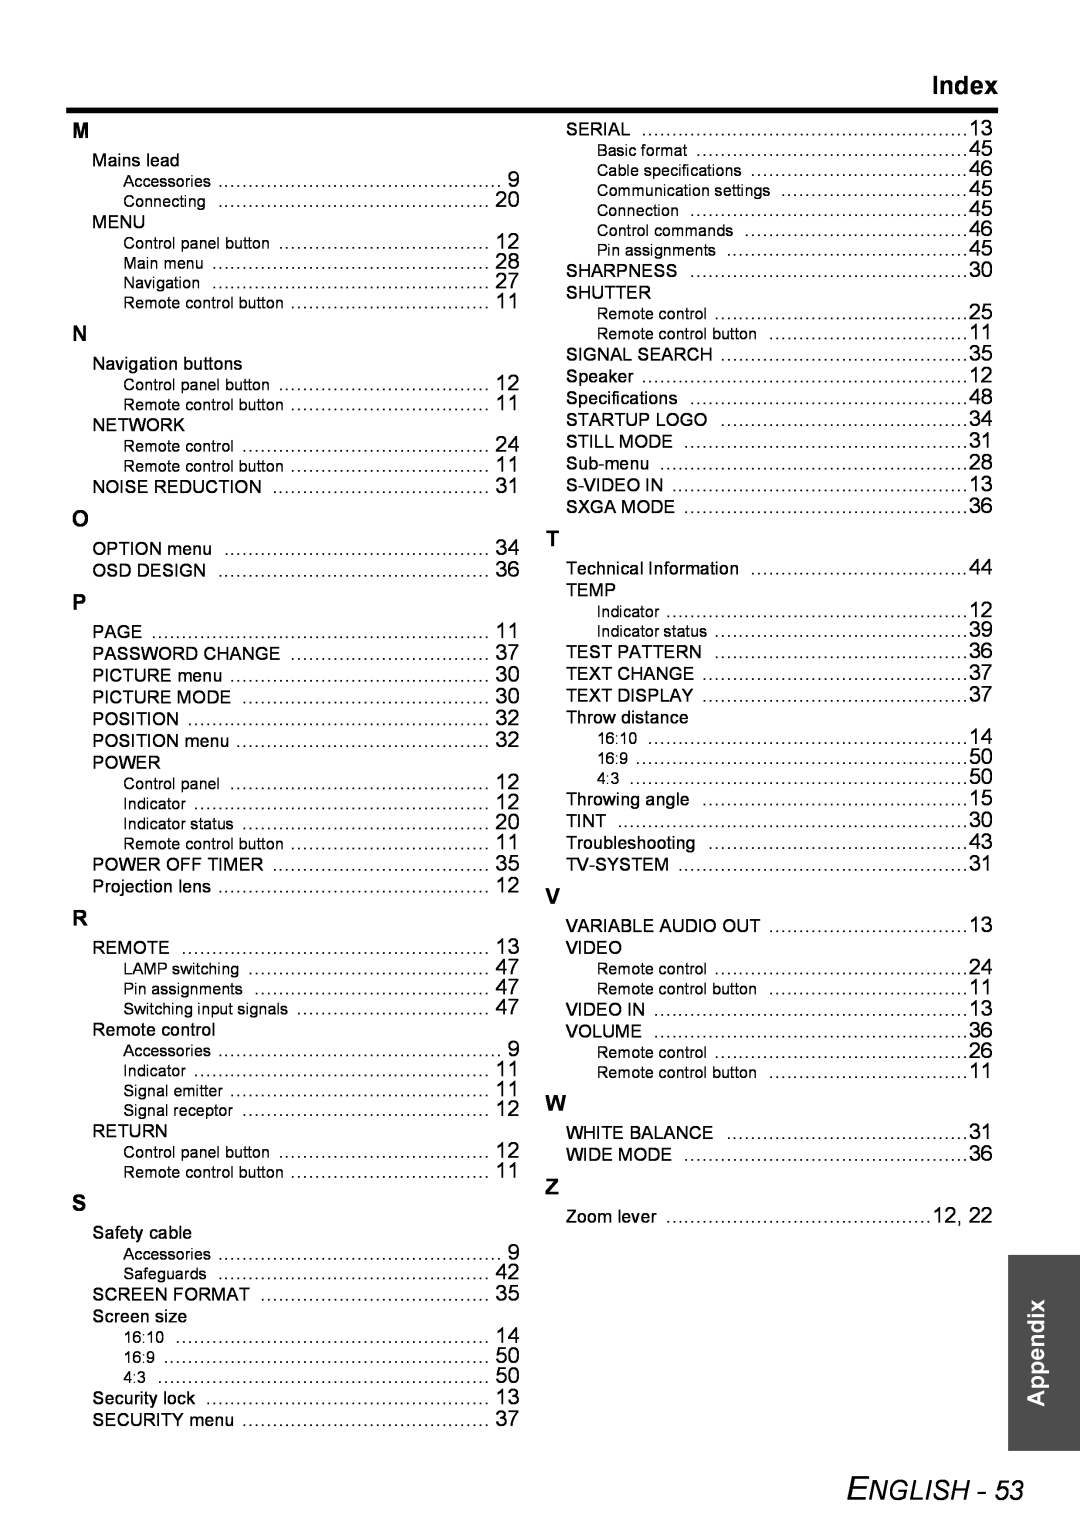 Philips PT-FW100NTU manual Index, English, Appendix 